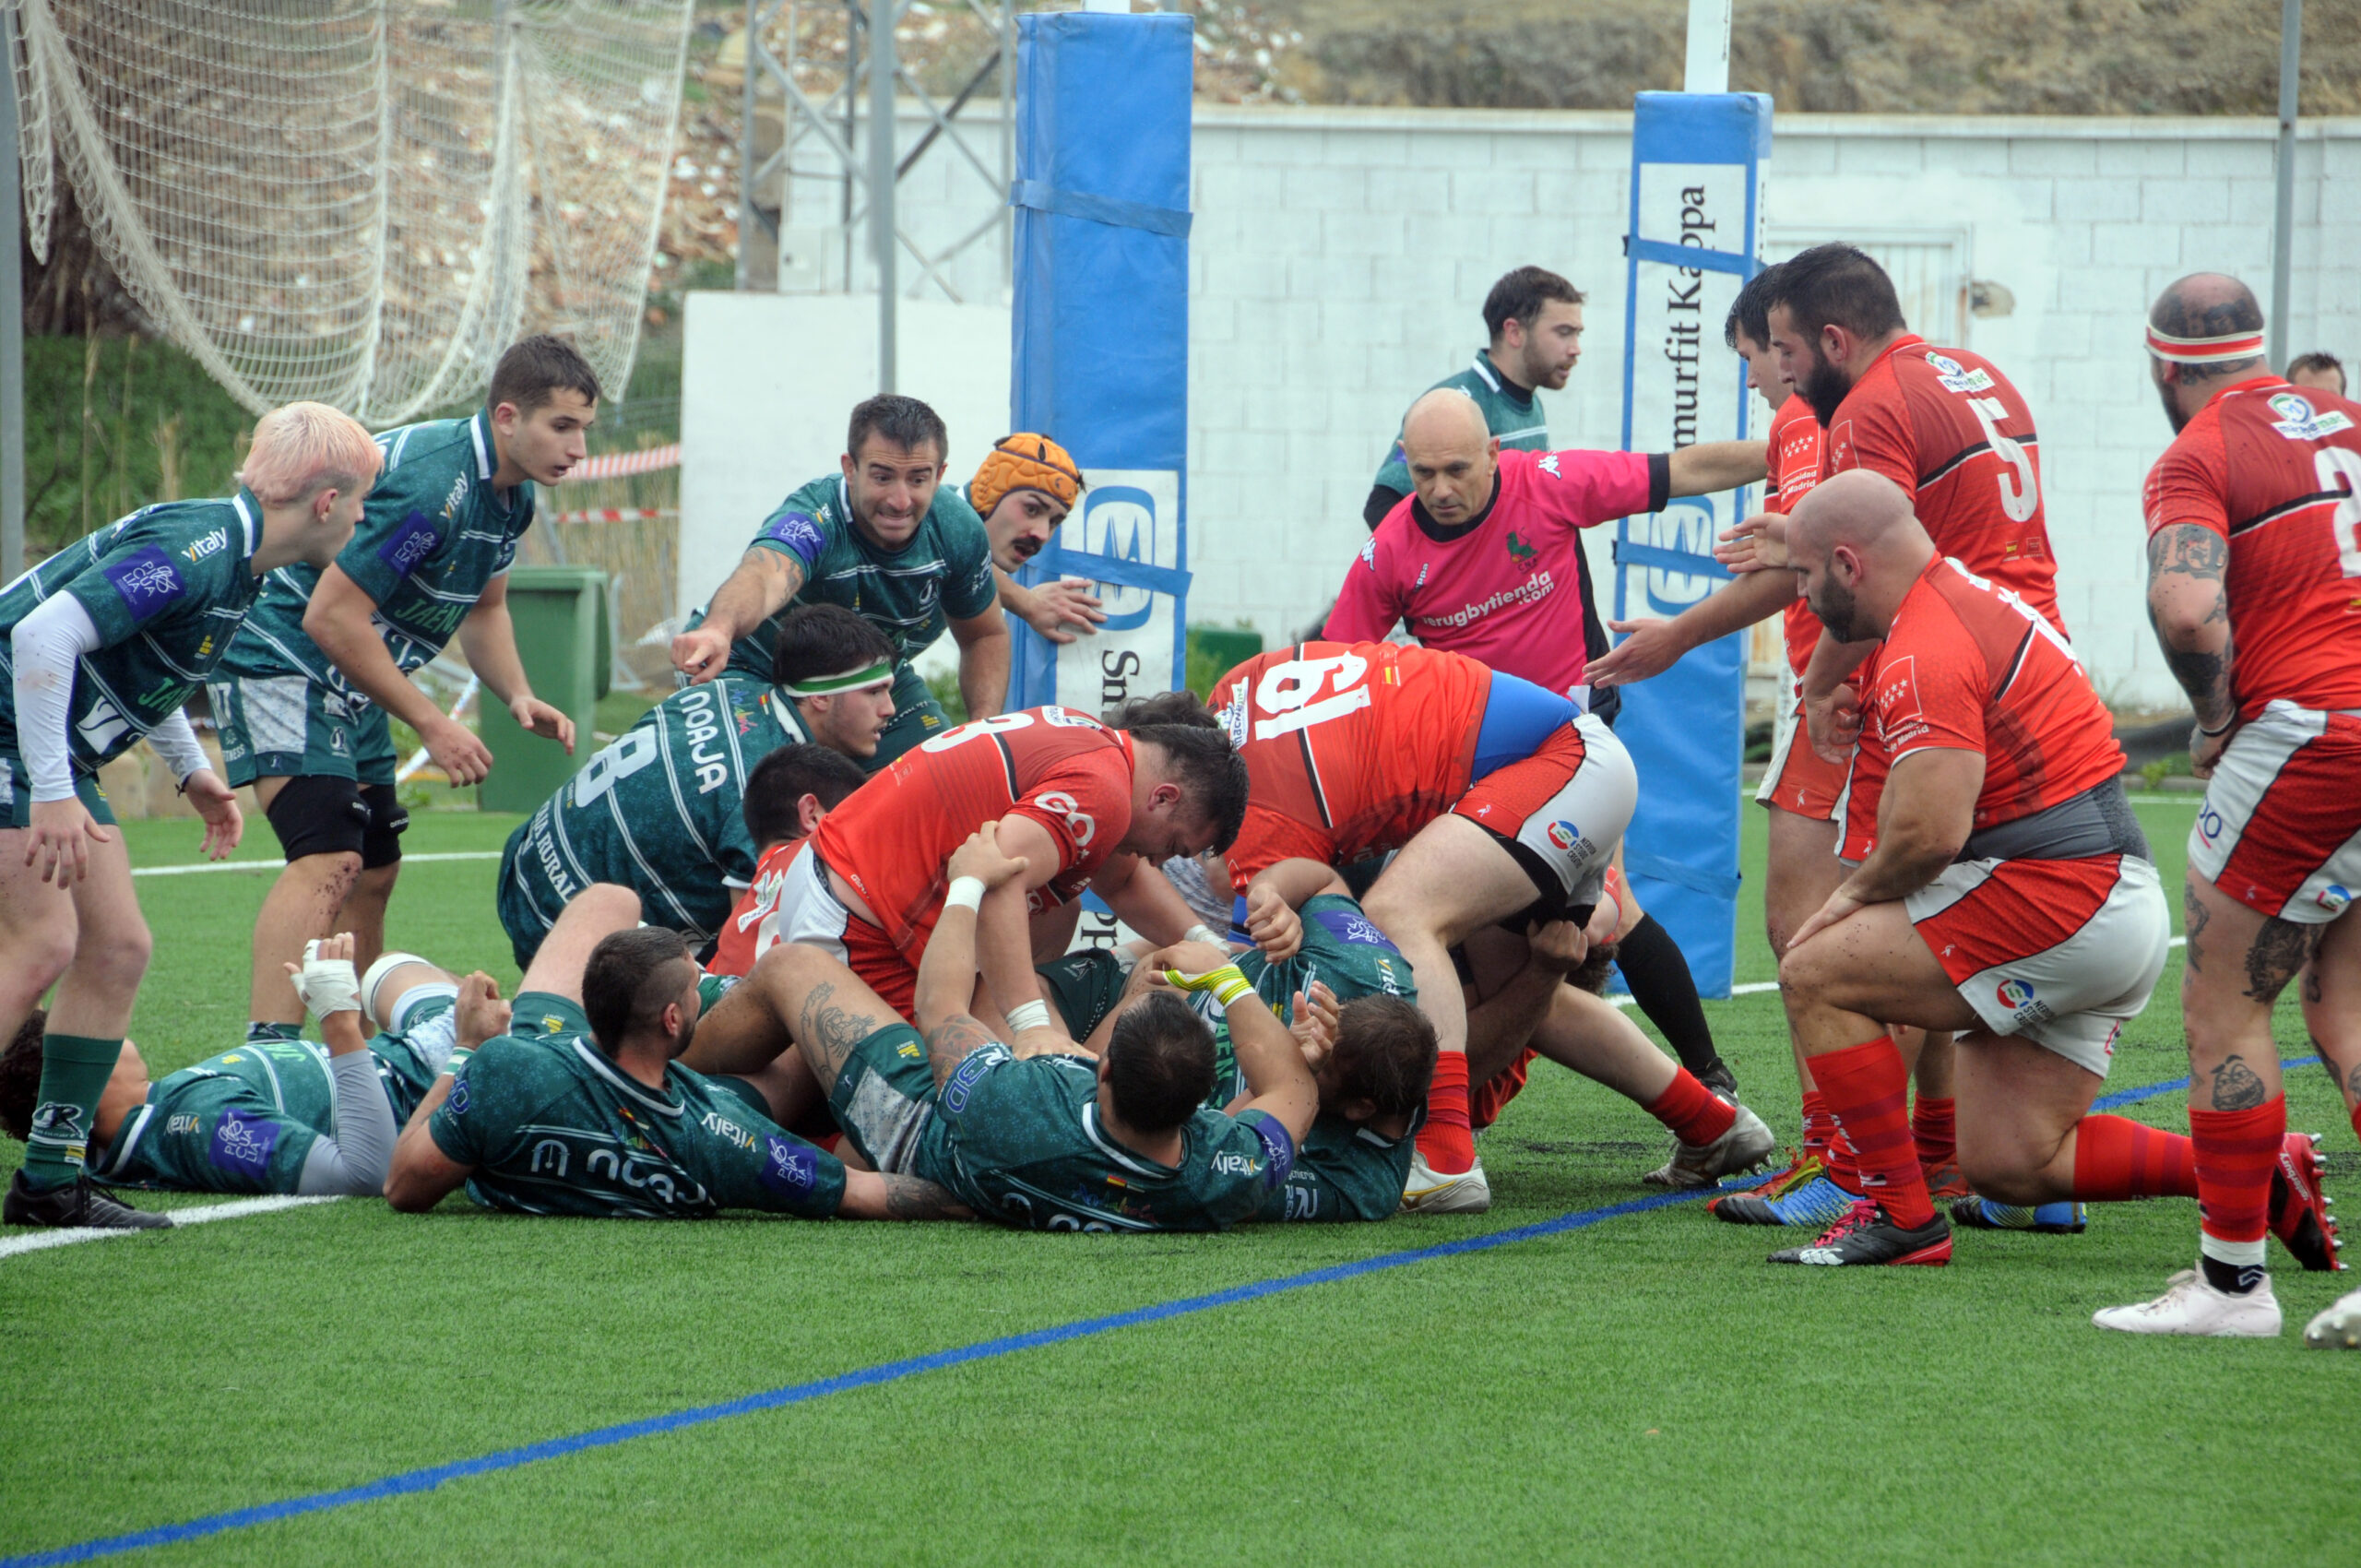 La mala segunda parte condena al Jaén Rugby